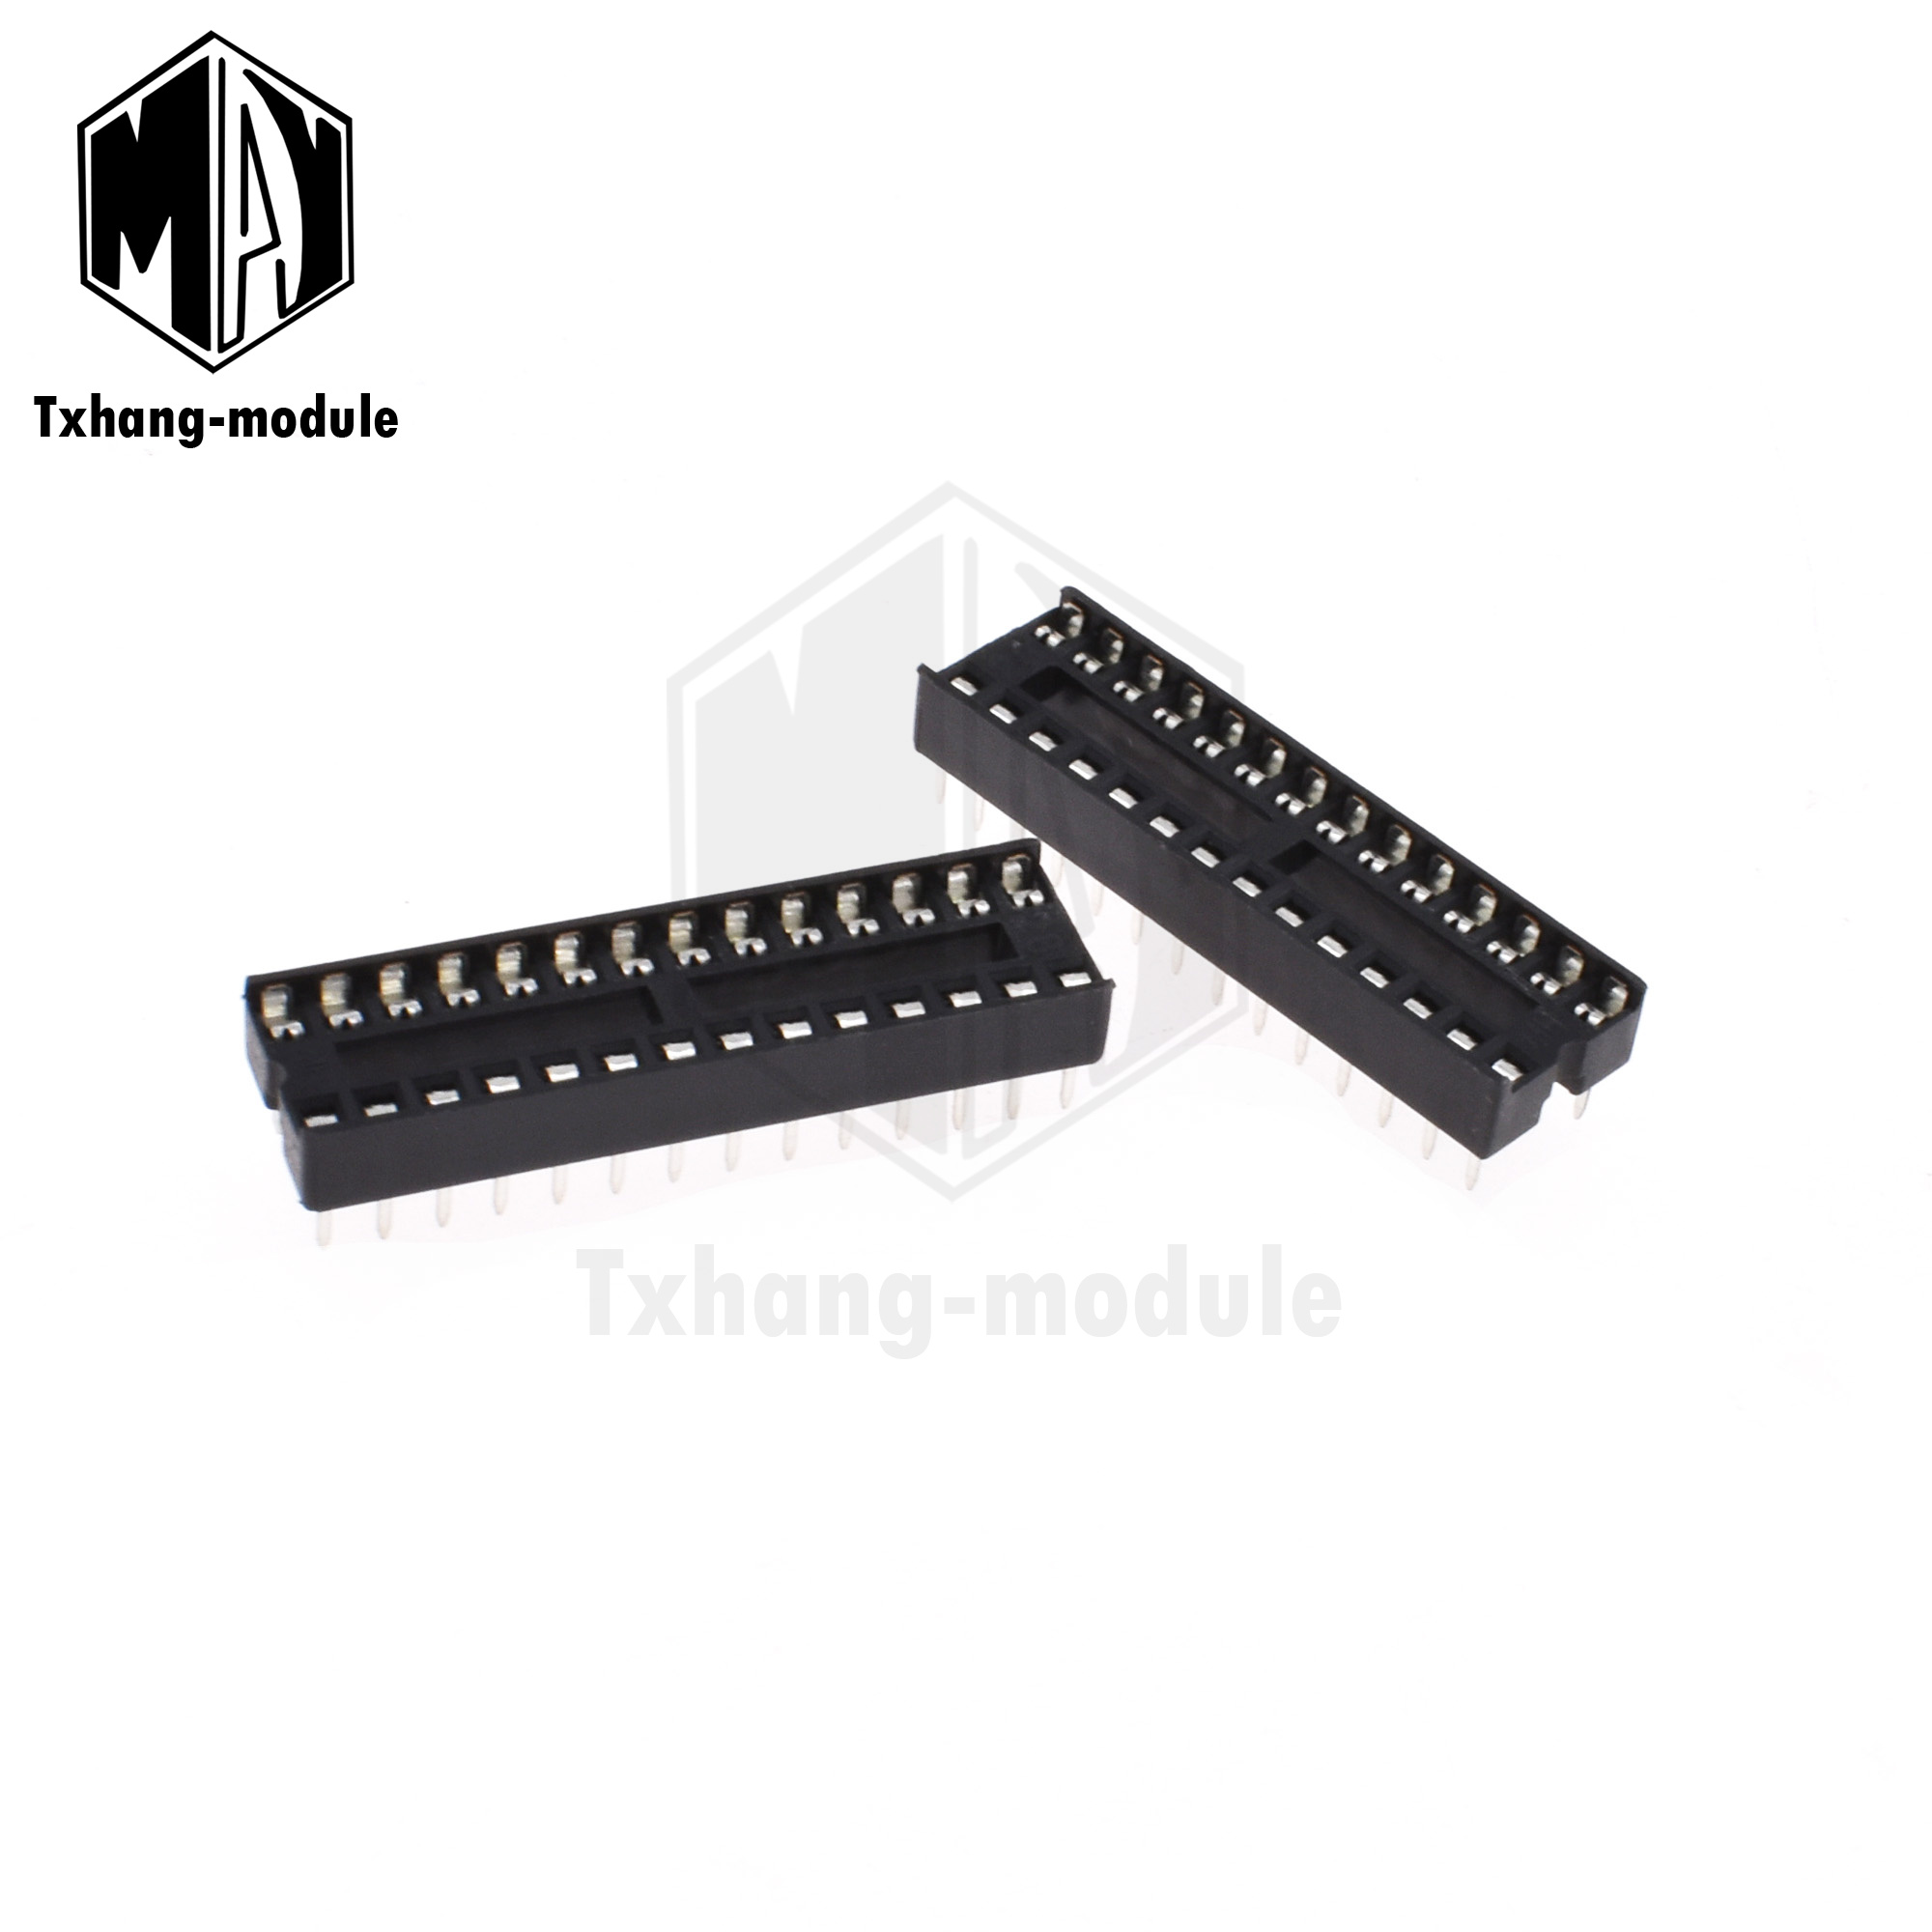 IC Socket Adaptor PCB Solder Type narrow/wide 6-40p pin l1sa 